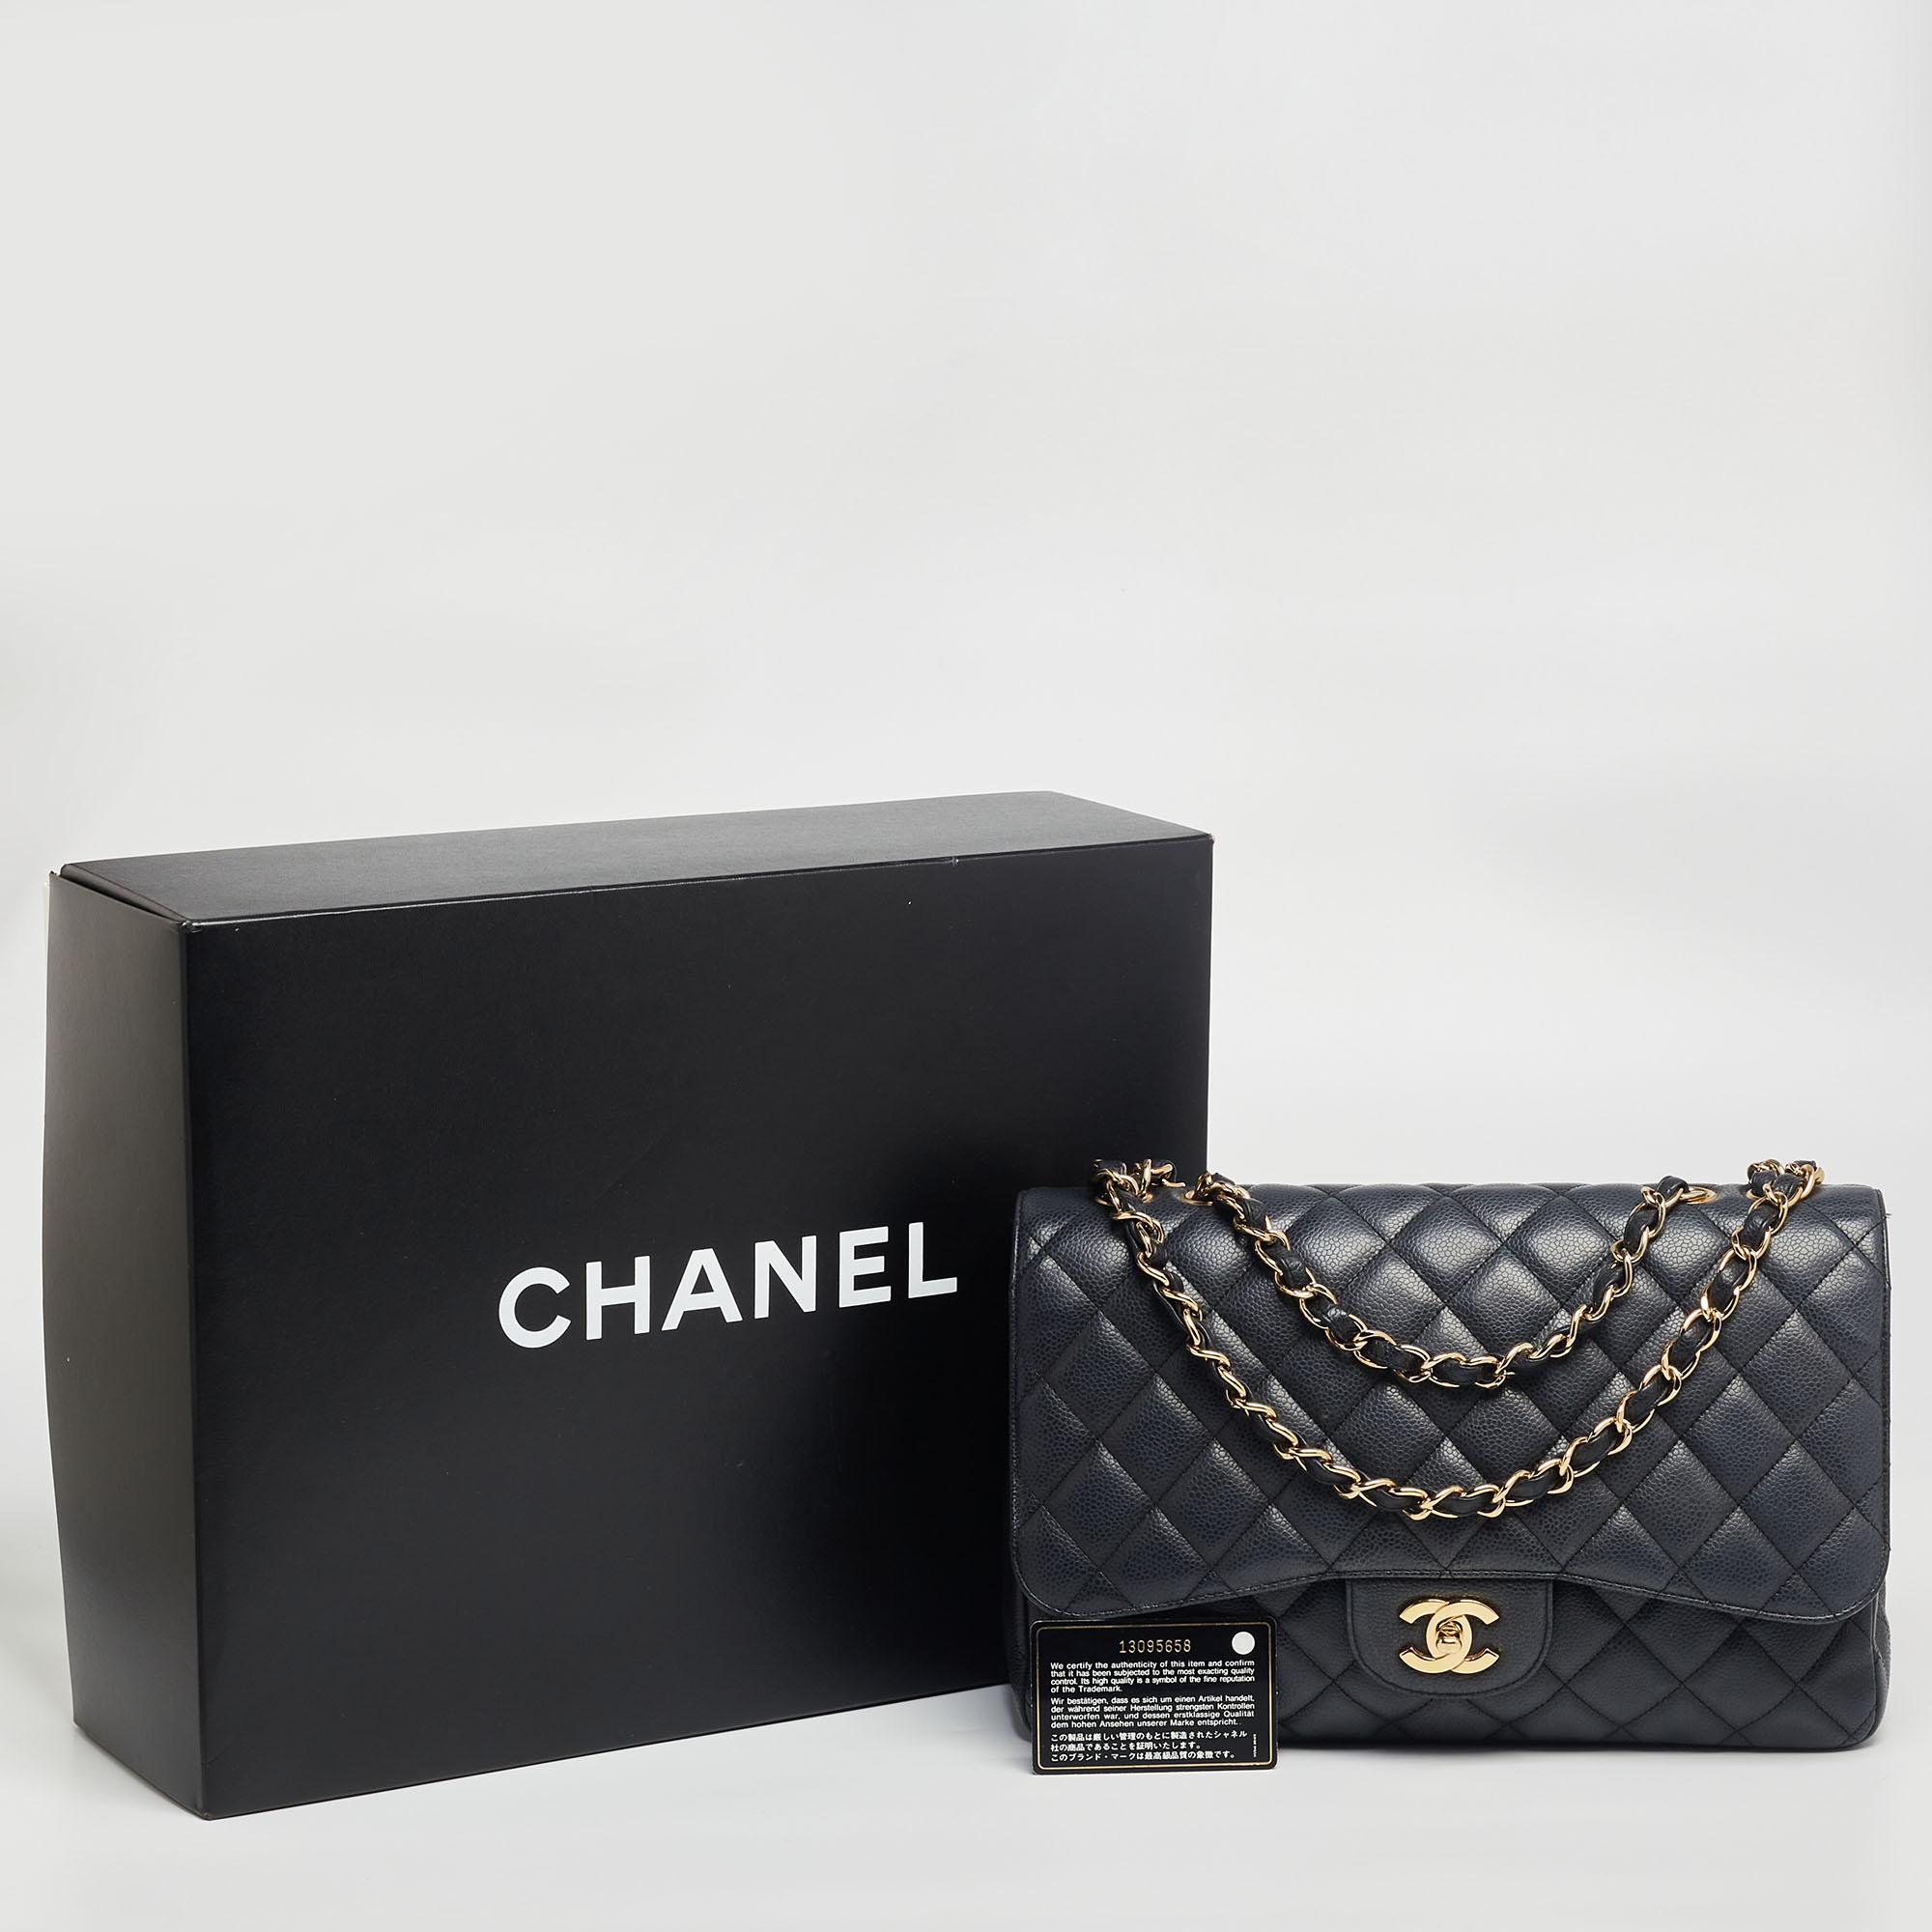 Chanel - Sac à rabat simple classique Jumbo en cuir texturé noir matelassé 10